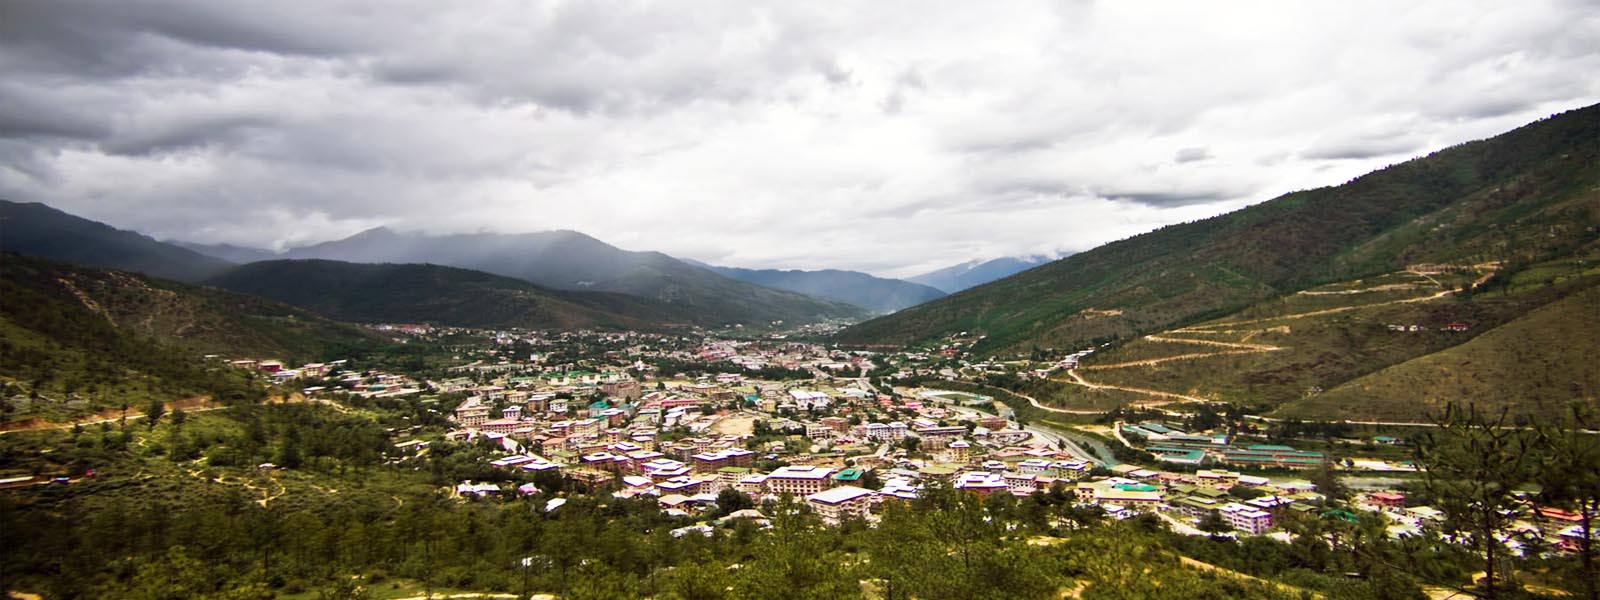  Bhutan Cultural Tour introduction 